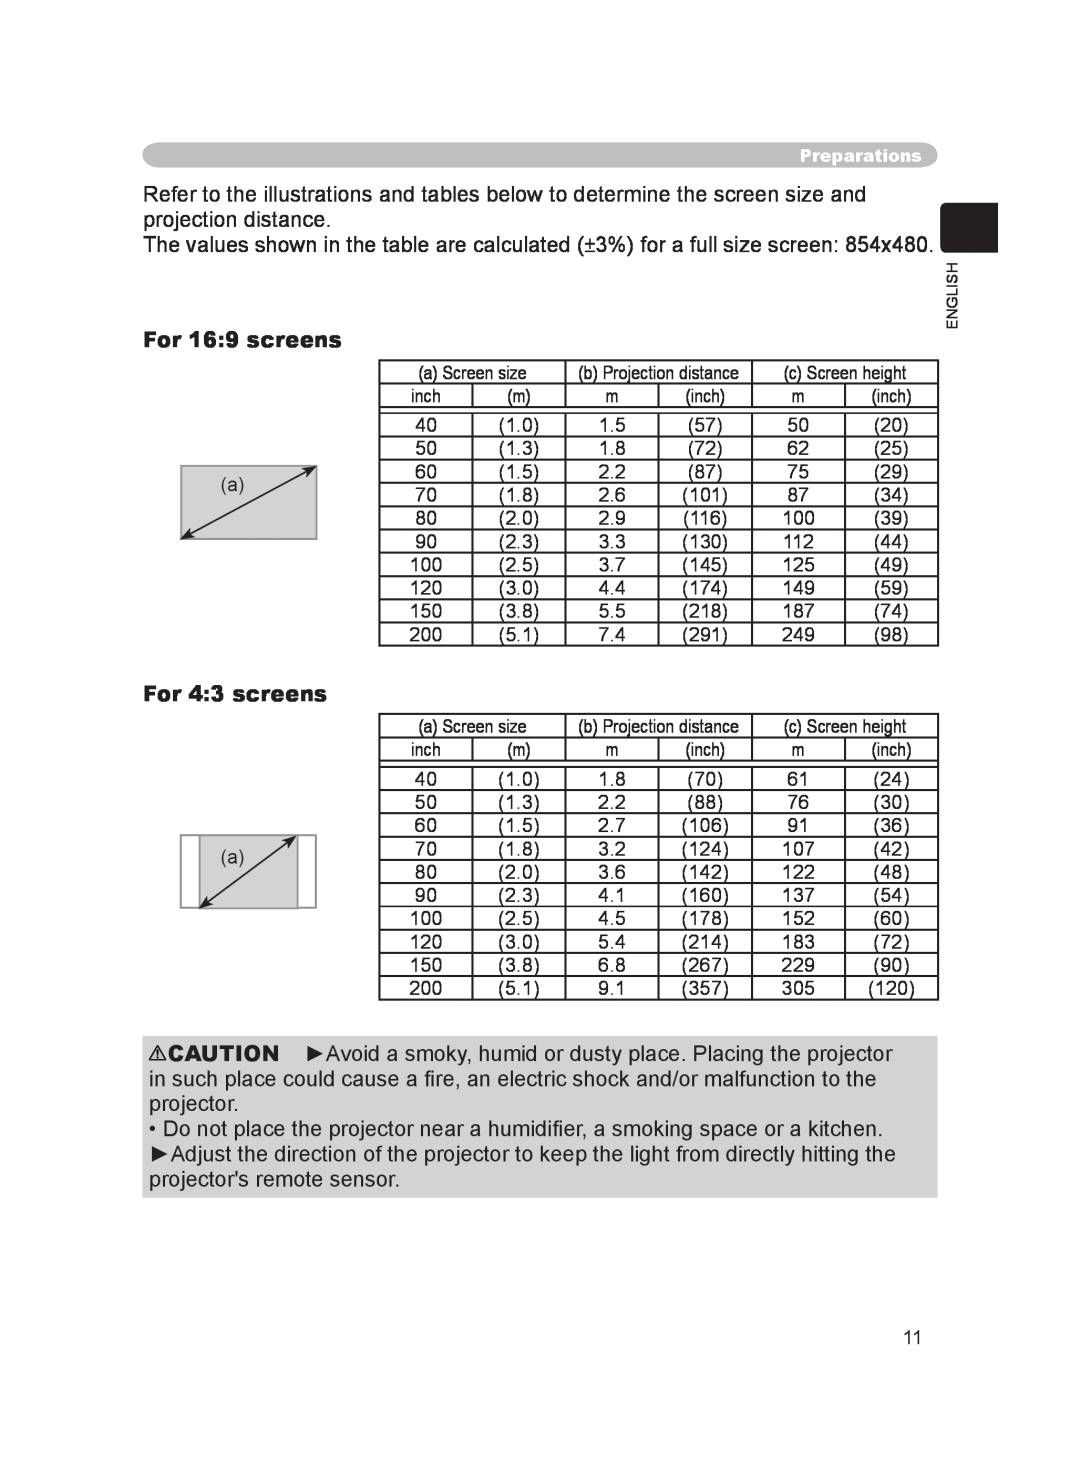 Hitachi PJ-LC9 user manual For 16 9 screens, For 4 3 screens 